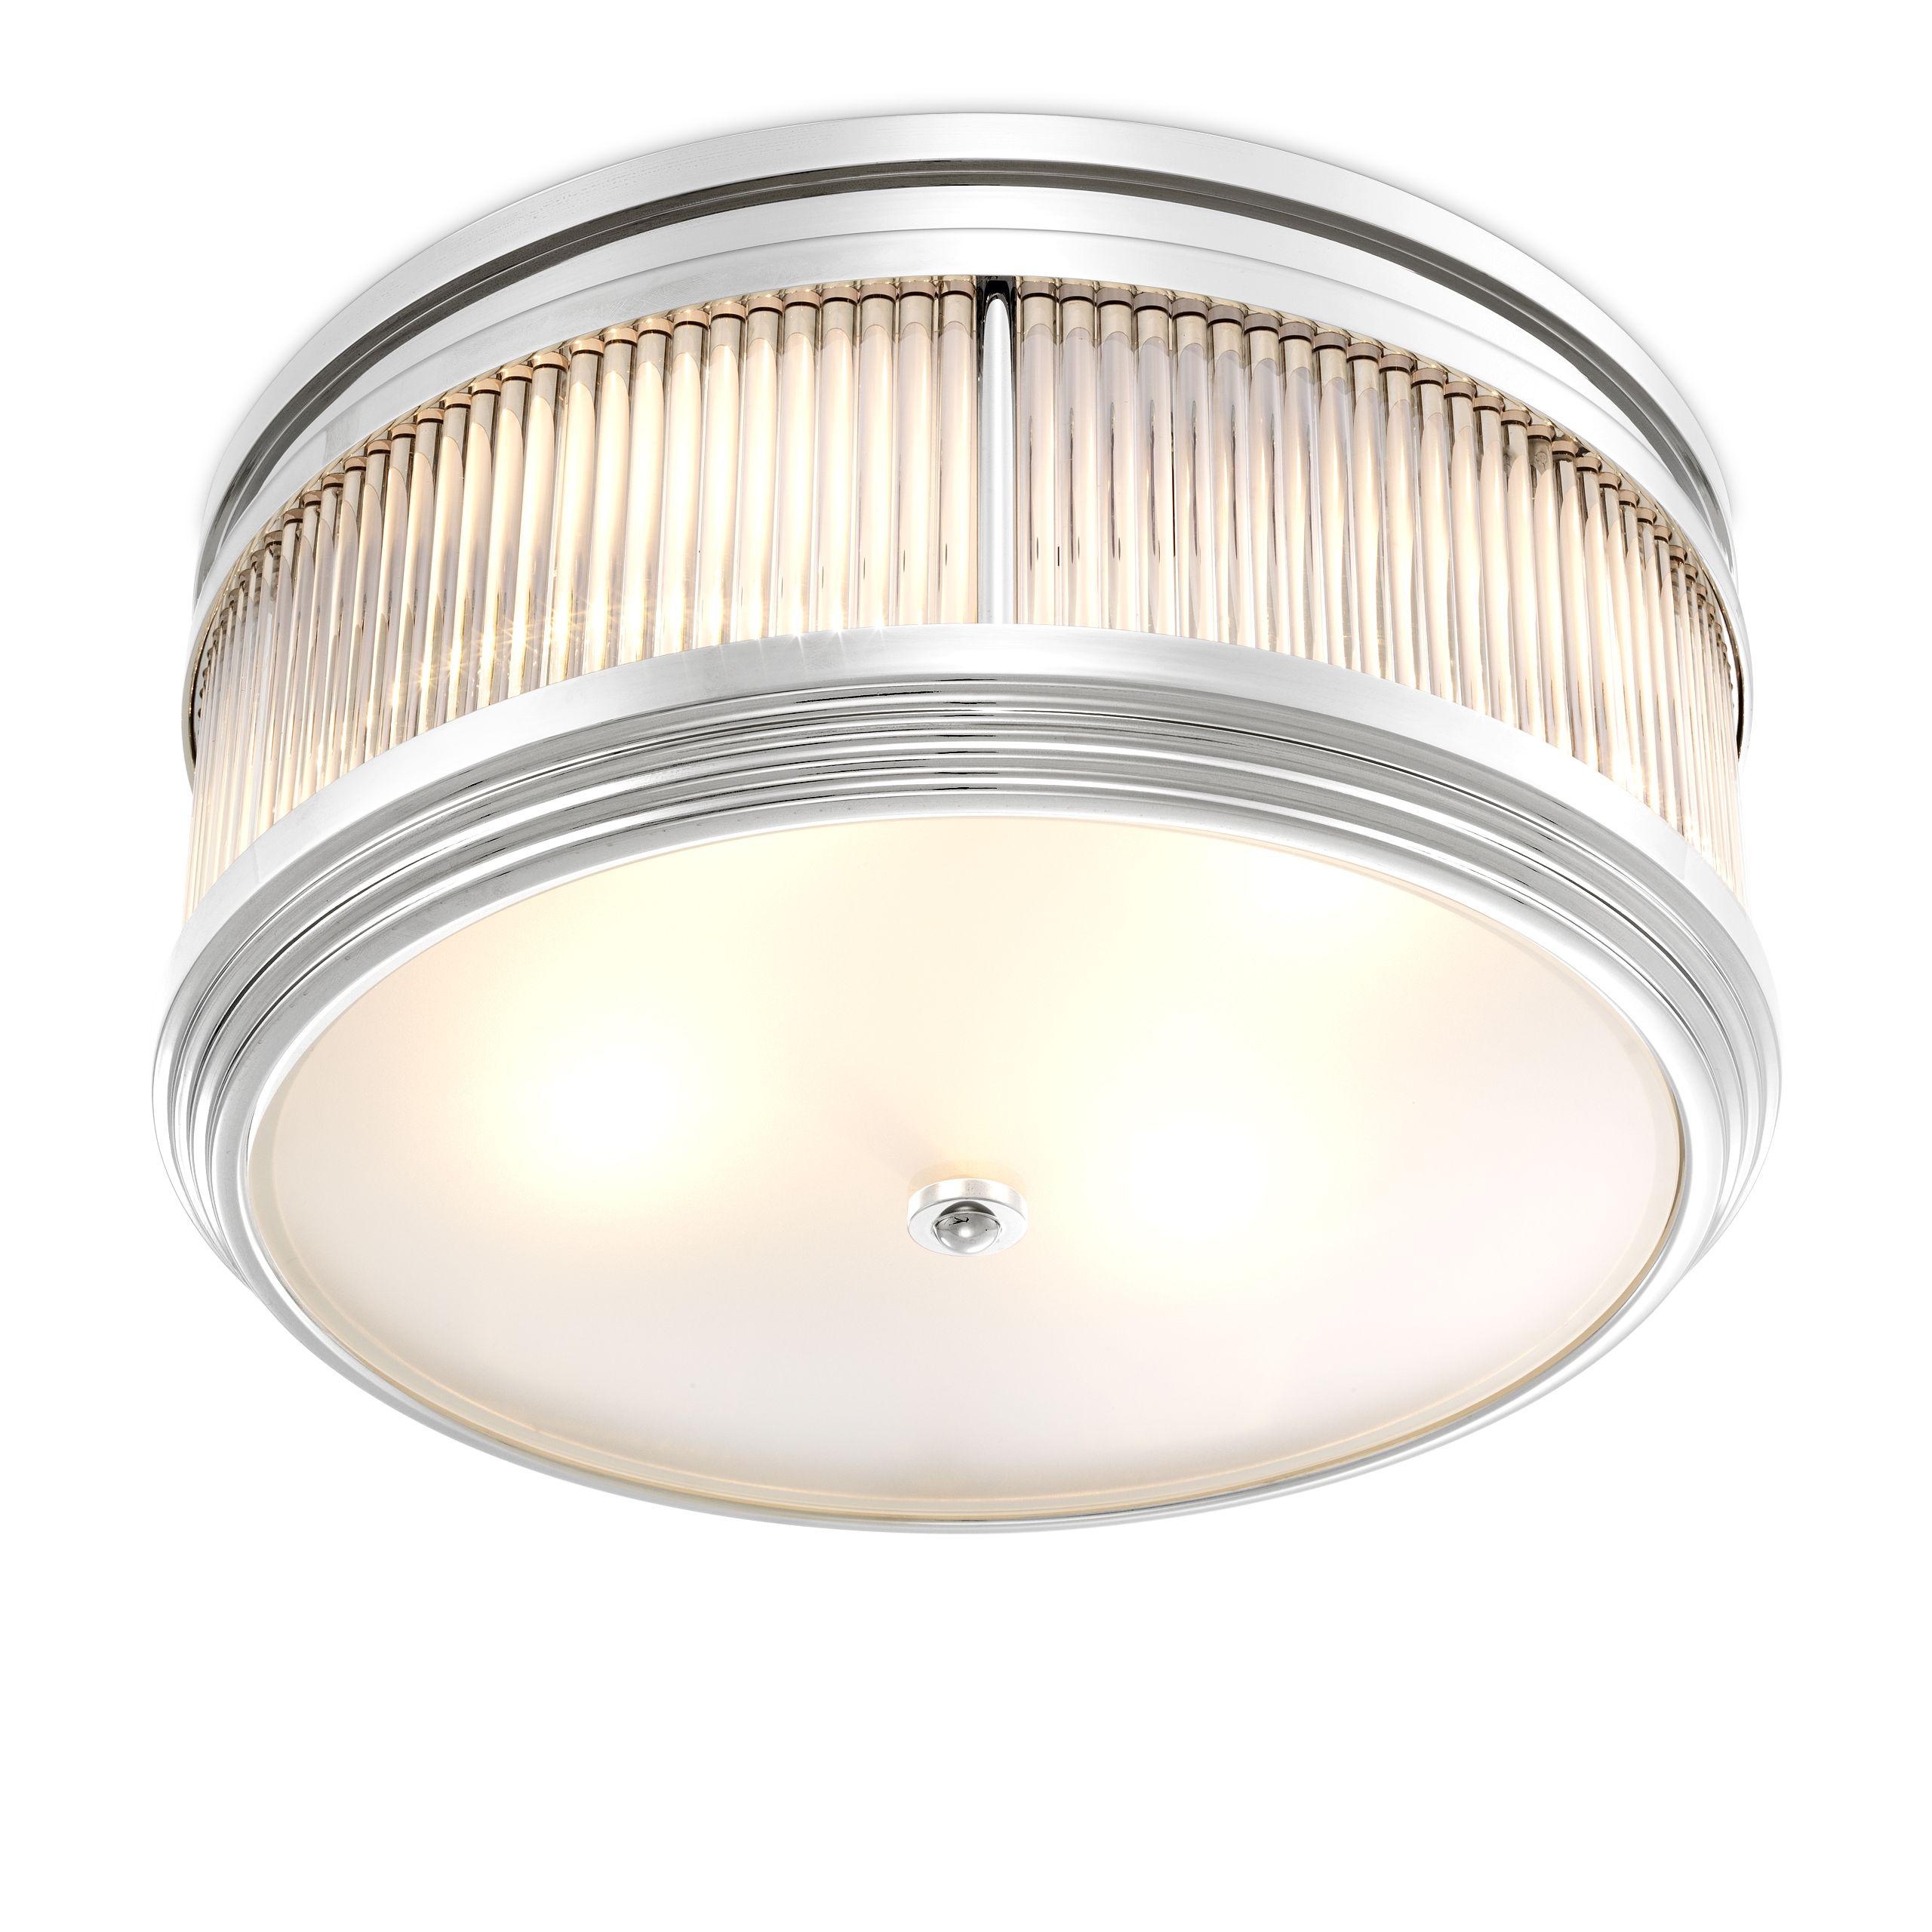 Купить Накладной светильник Ceiling Lamp Rousseau в интернет-магазине roooms.ru